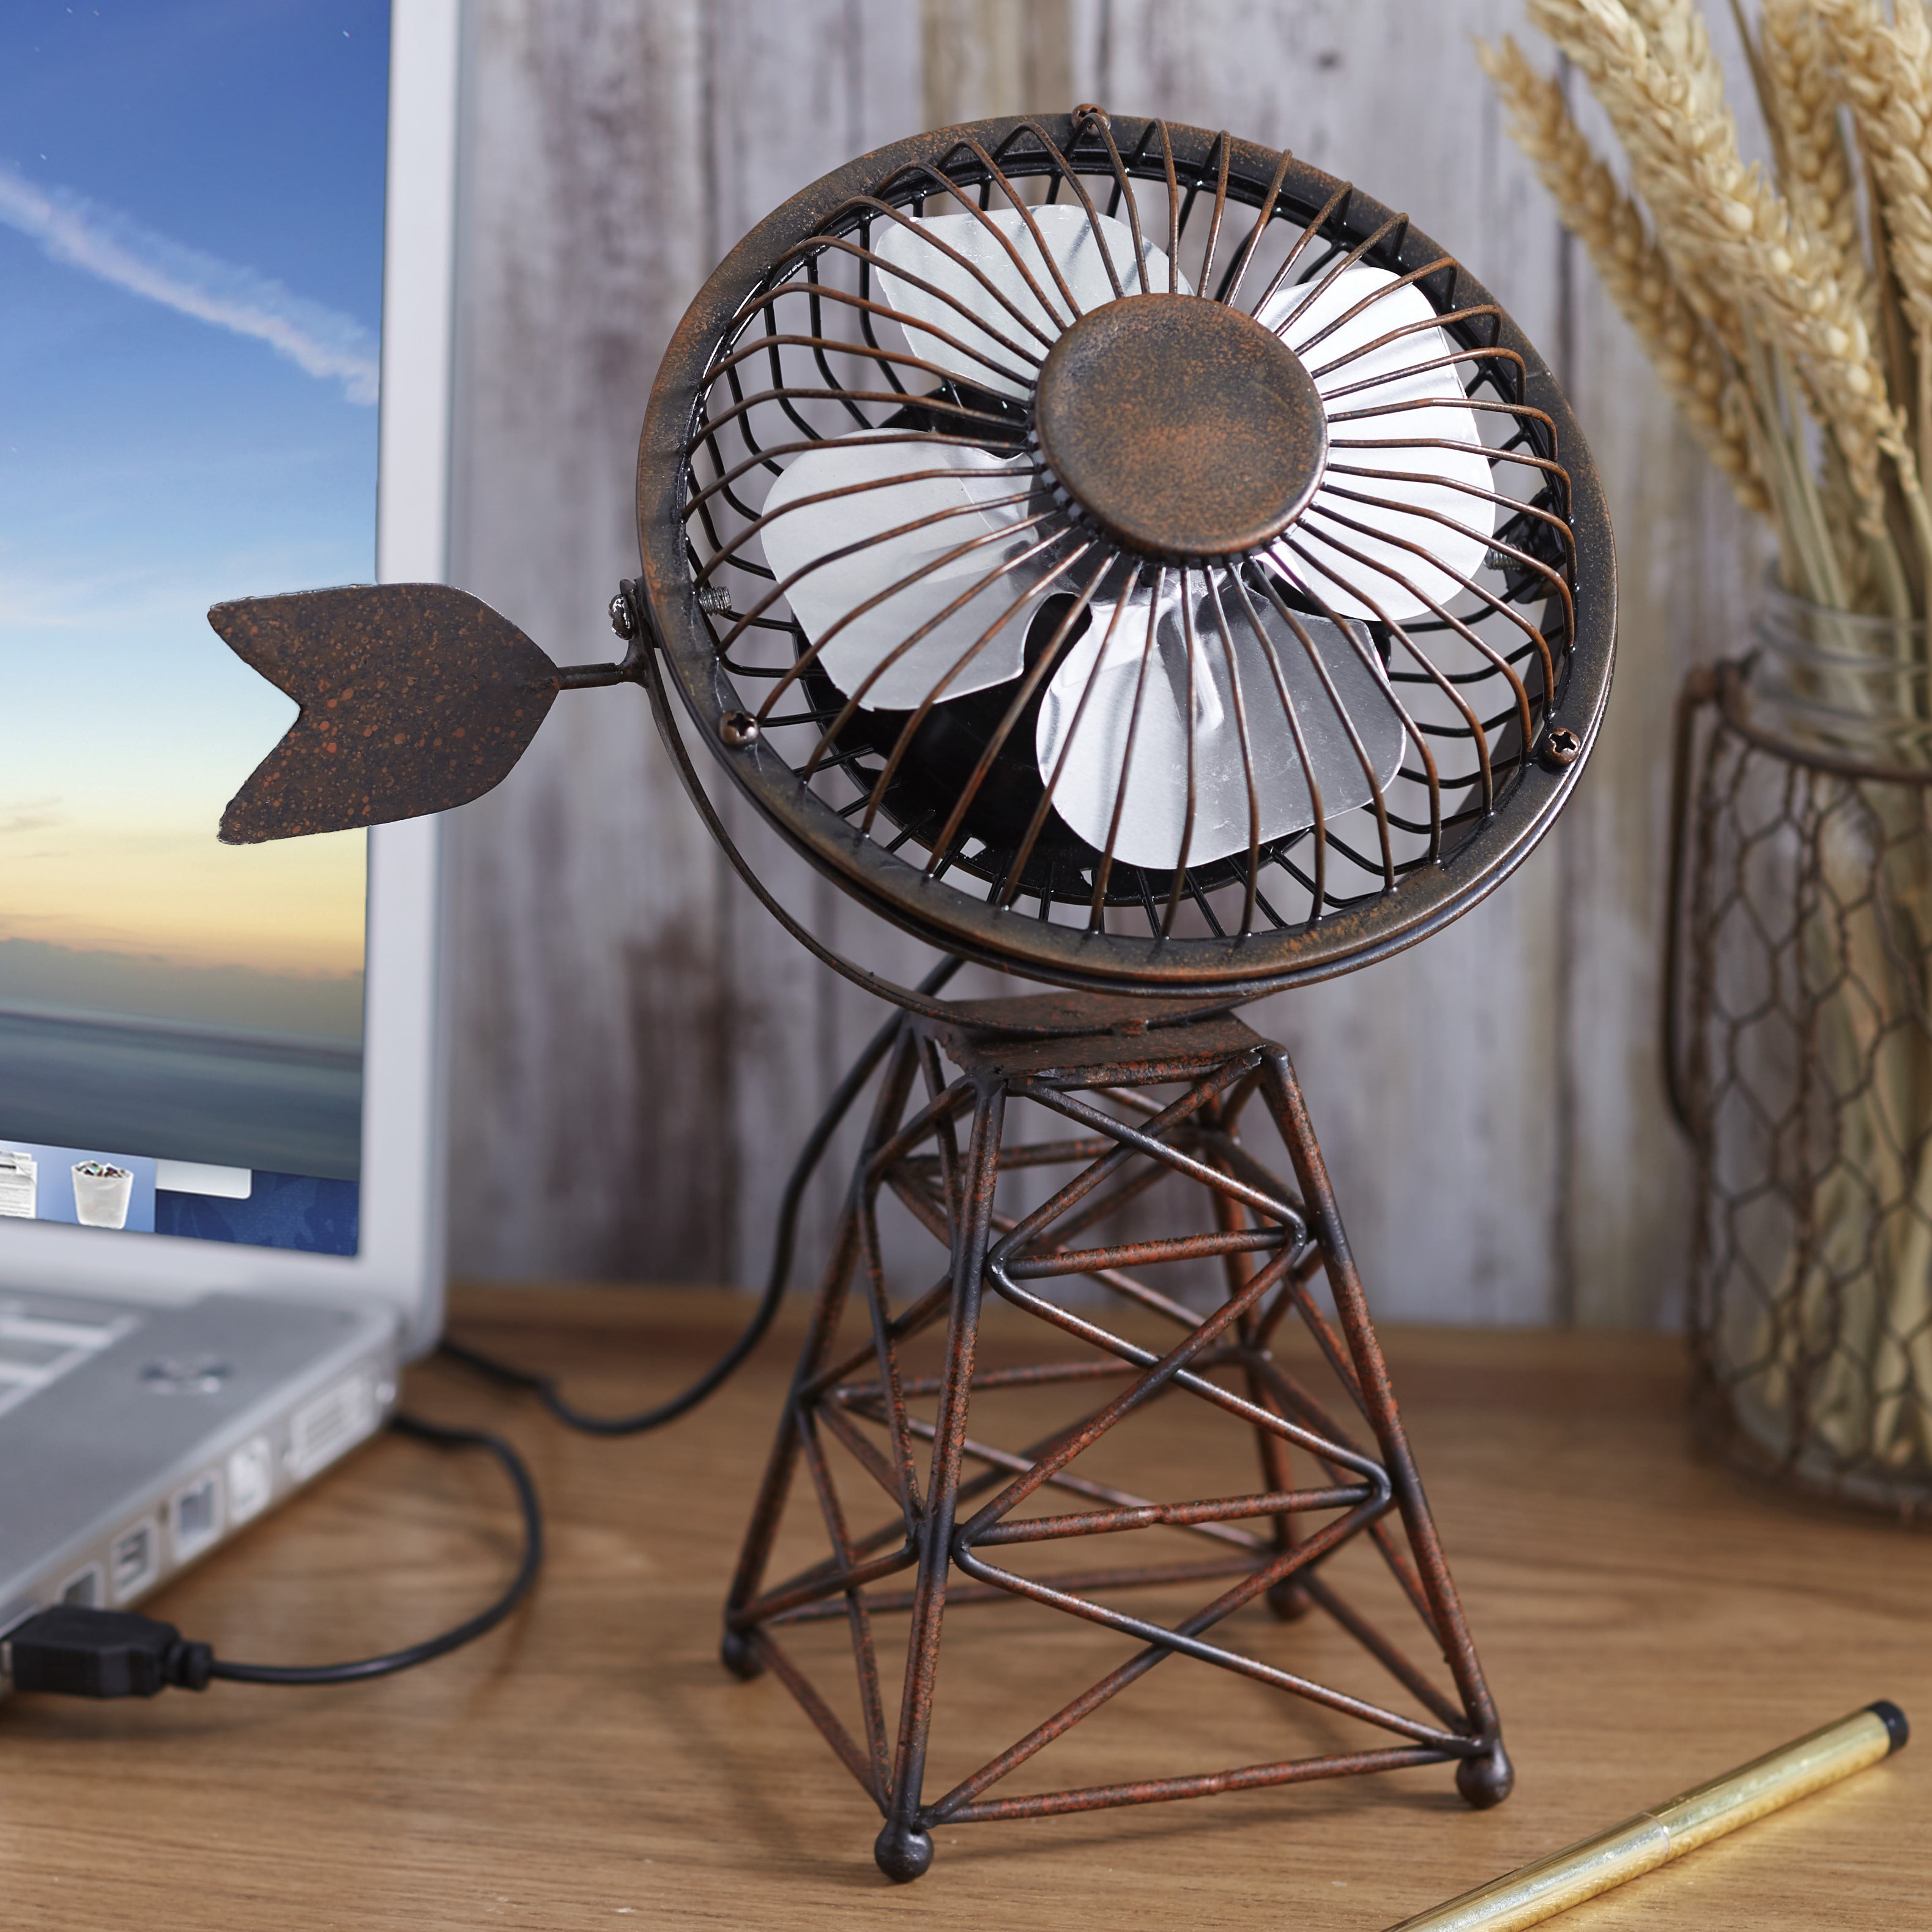 Rustic Farmhouse Appeal Desk Accessory Windmill Themed USB Desktop Fan